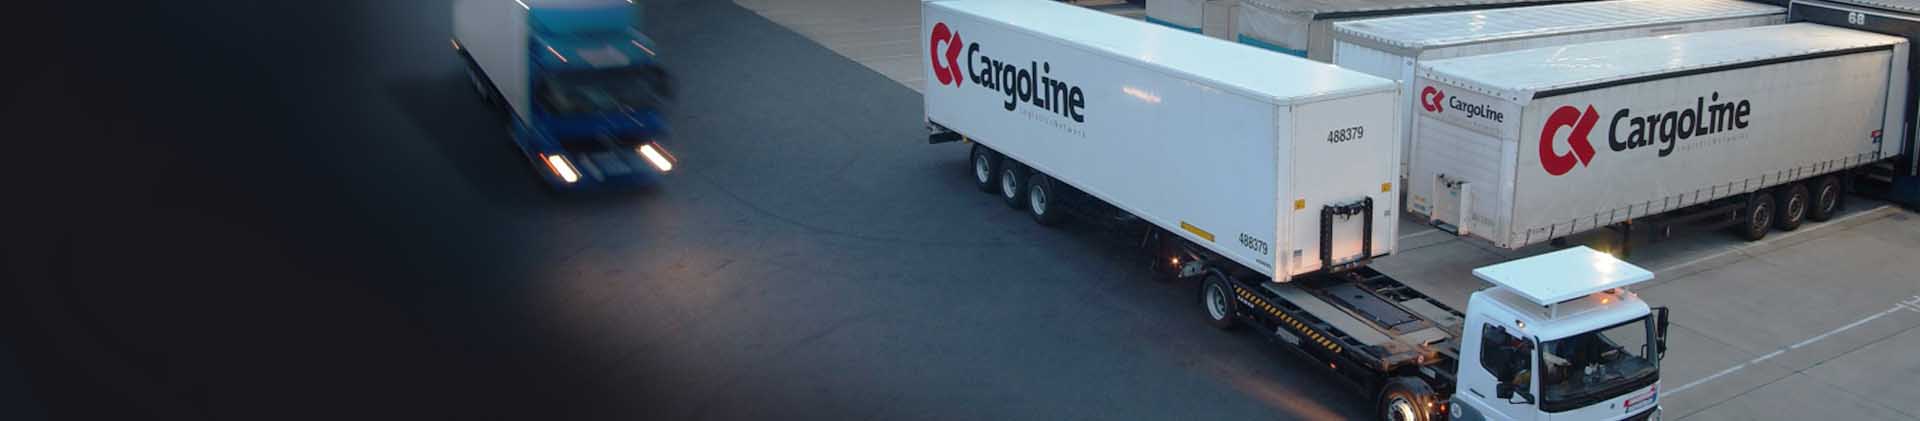 CargoLine bringt Stückgut deutschlandweit in 24 bis 48 Stunden ans Ziel